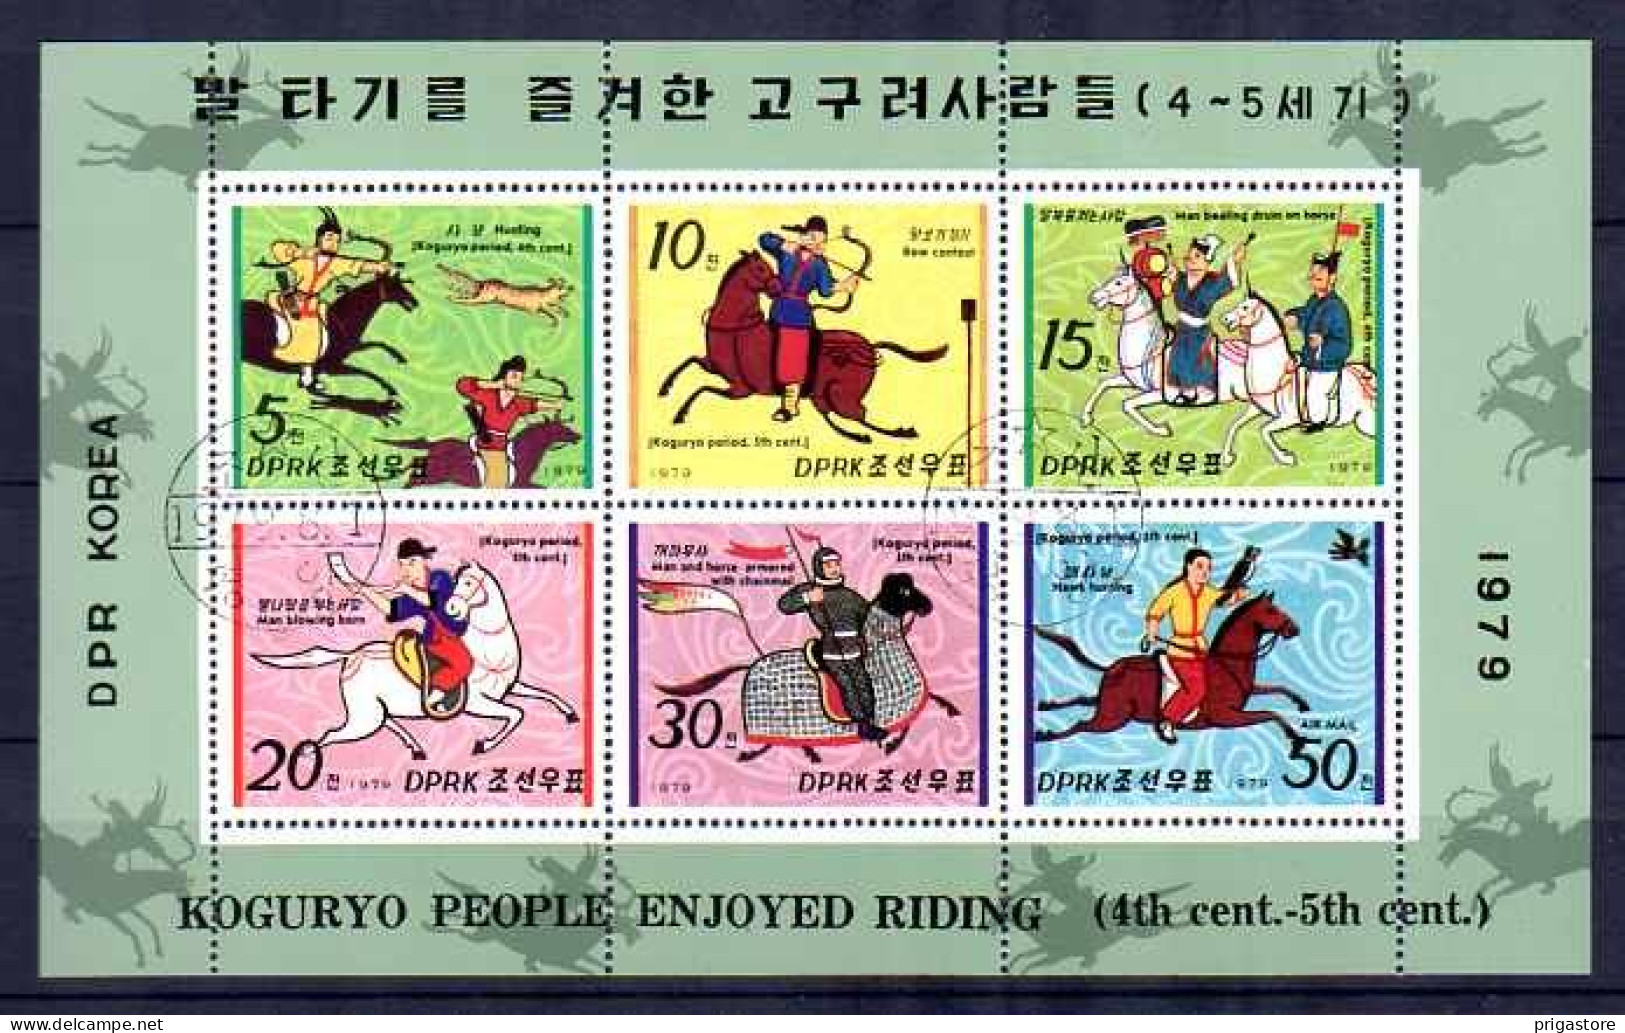 Corée Du Nord 1979 Chevaux (39) Yvert N° 1533 à 1537 Oblitéré Used - Corée Du Nord